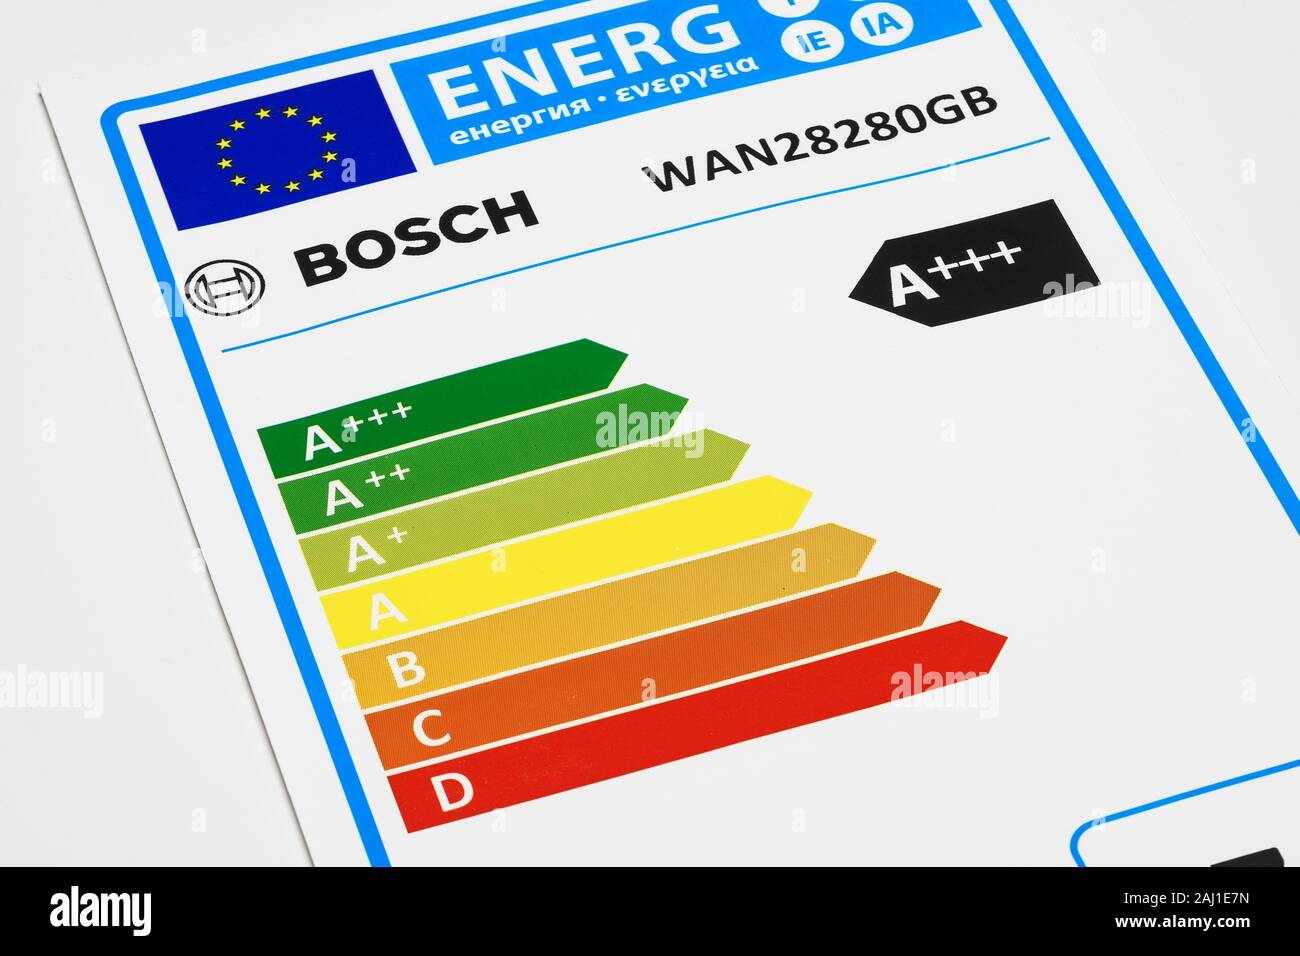 Una etiqueta de clasificación energética en una lavadora Bosch Foto de stock